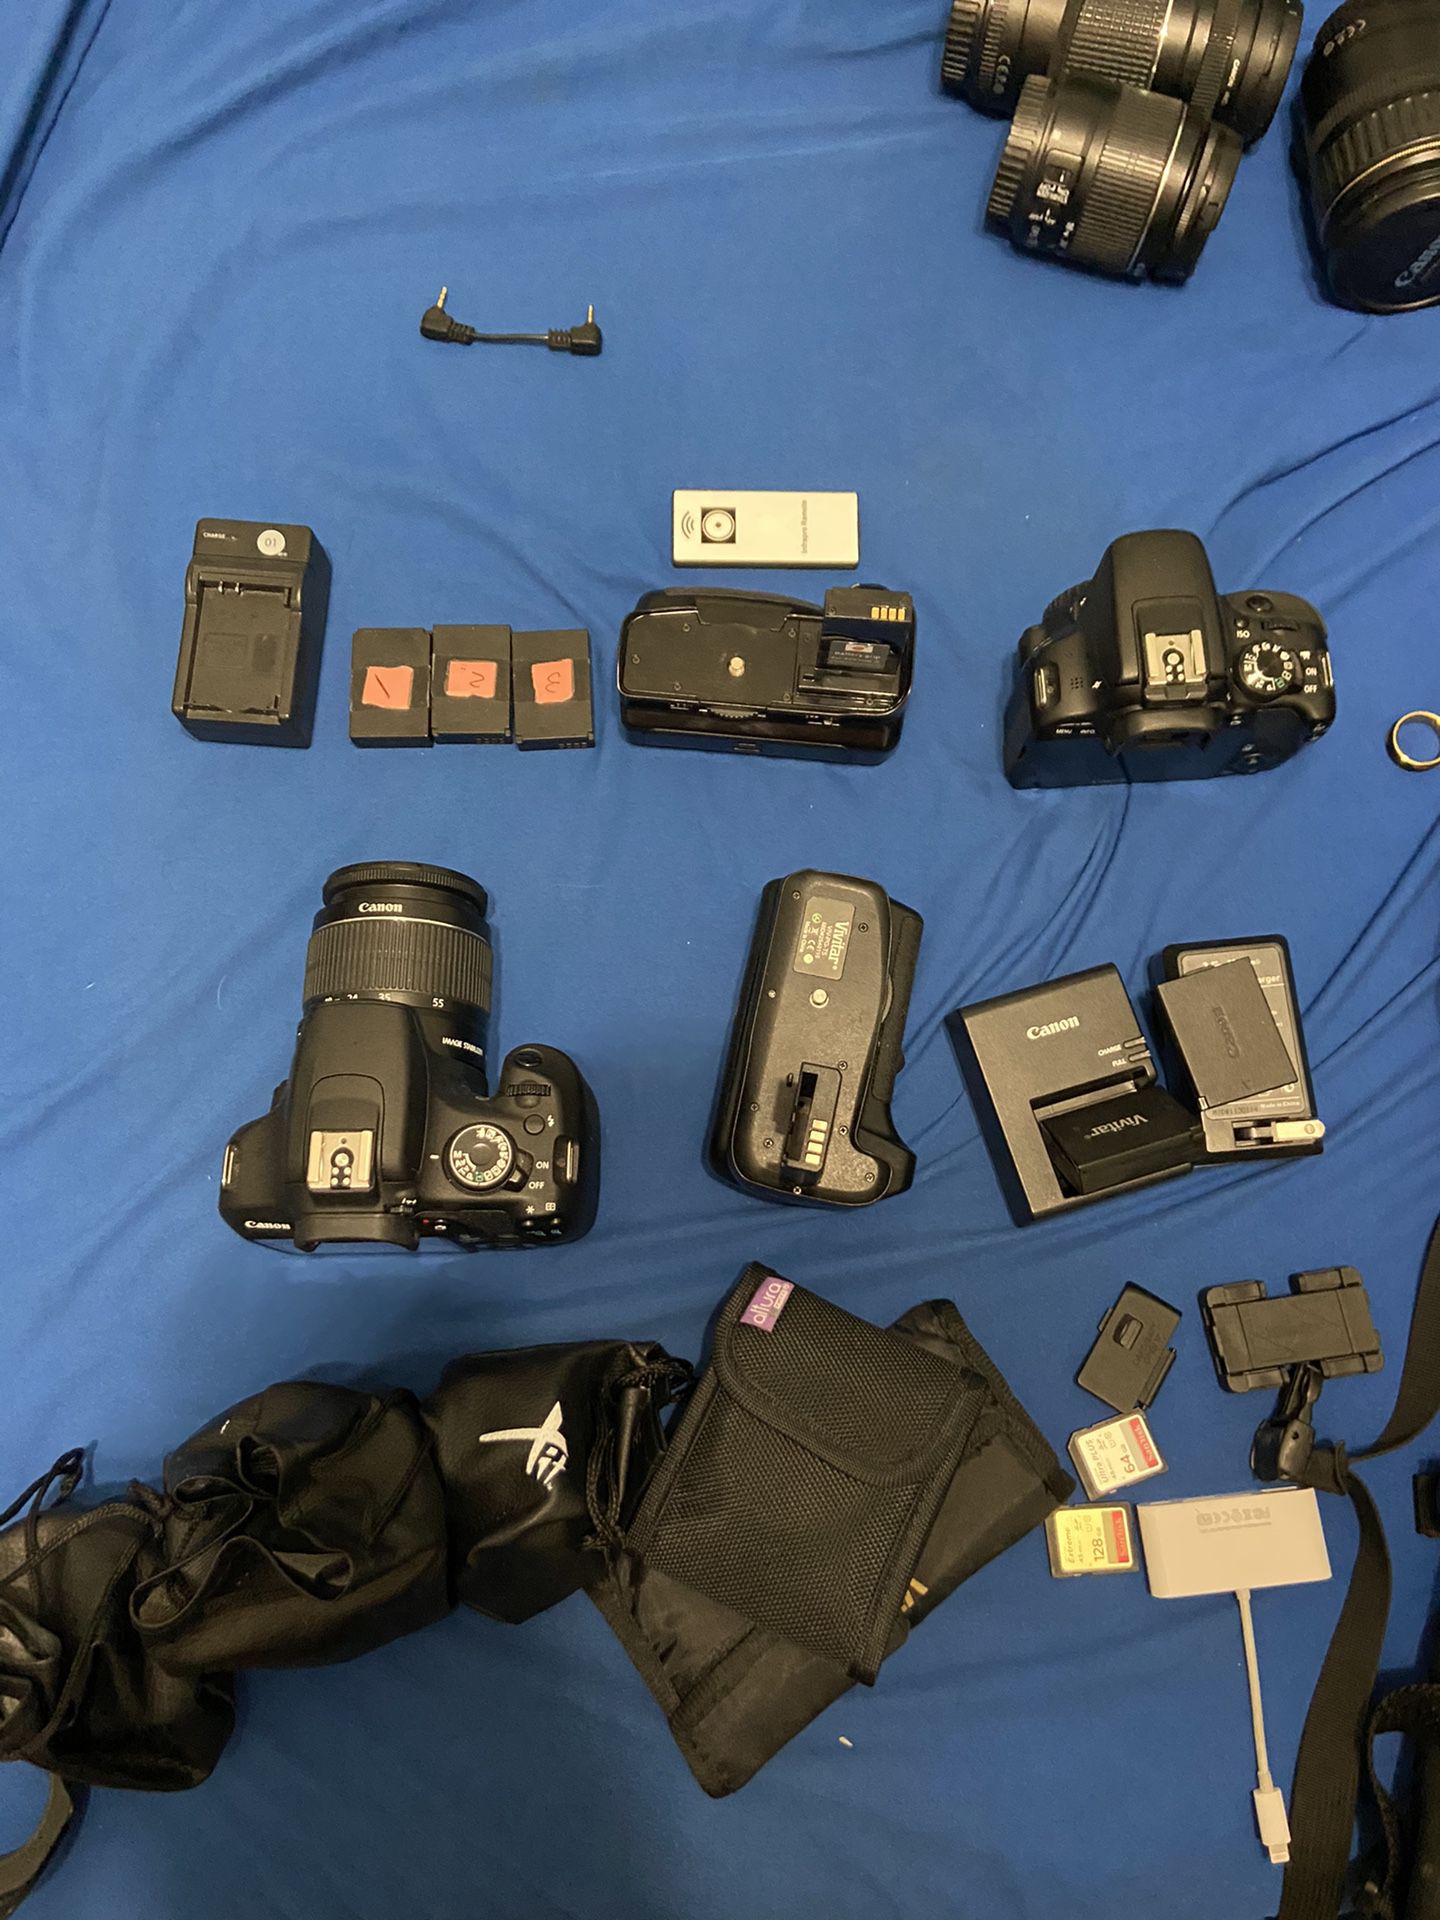 canon cameras and accessories